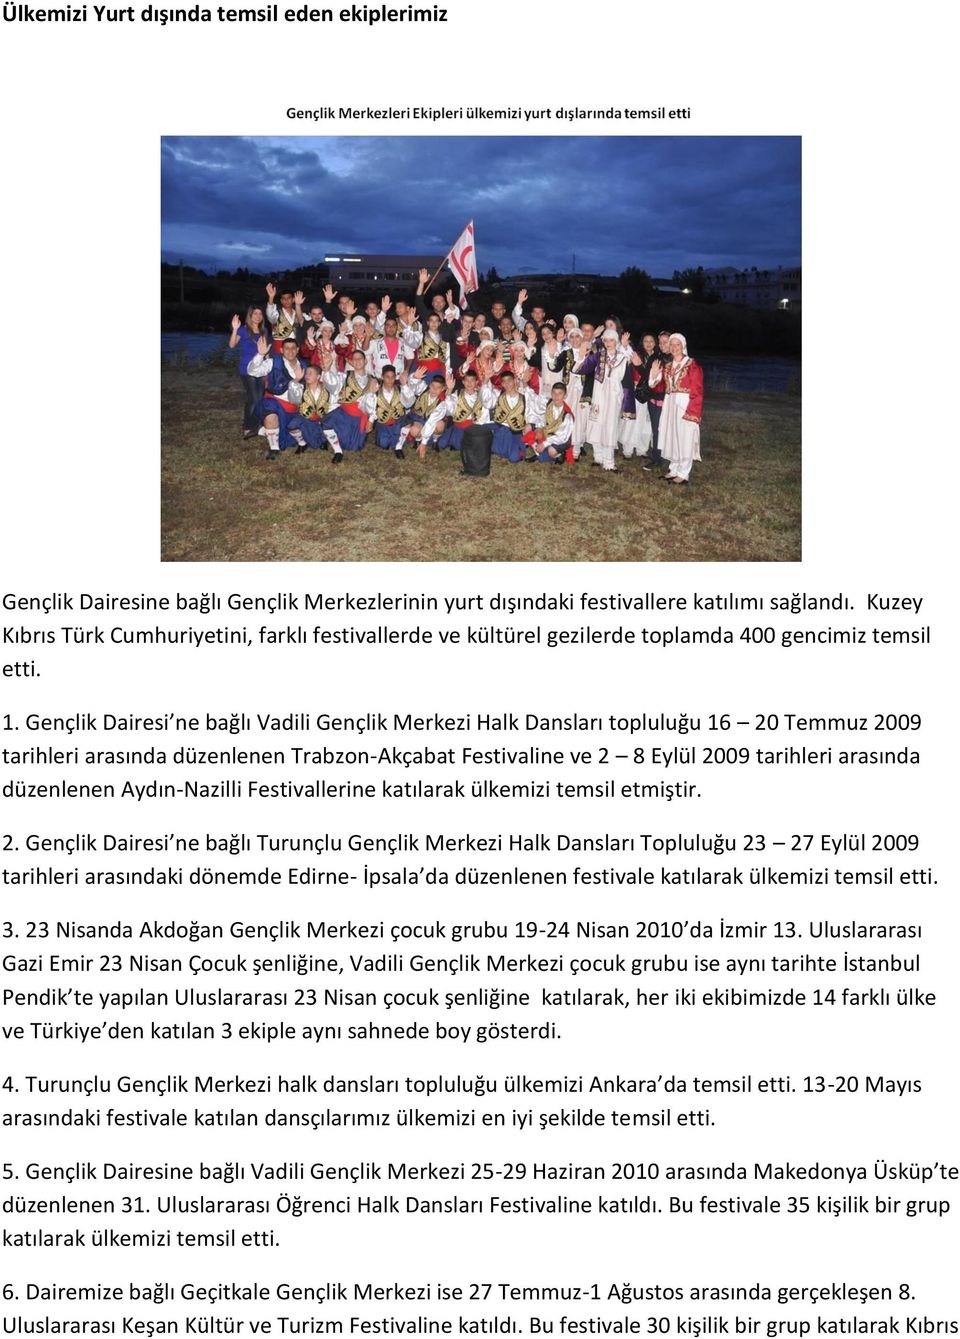 Gençlik Dairesi ne bağlı Vadili Gençlik Merkezi Halk Dansları topluluğu 16 20 Temmuz 2009 tarihleri arasında düzenlenen Trabzon-Akçabat Festivaline ve 2 8 Eylül 2009 tarihleri arasında düzenlenen